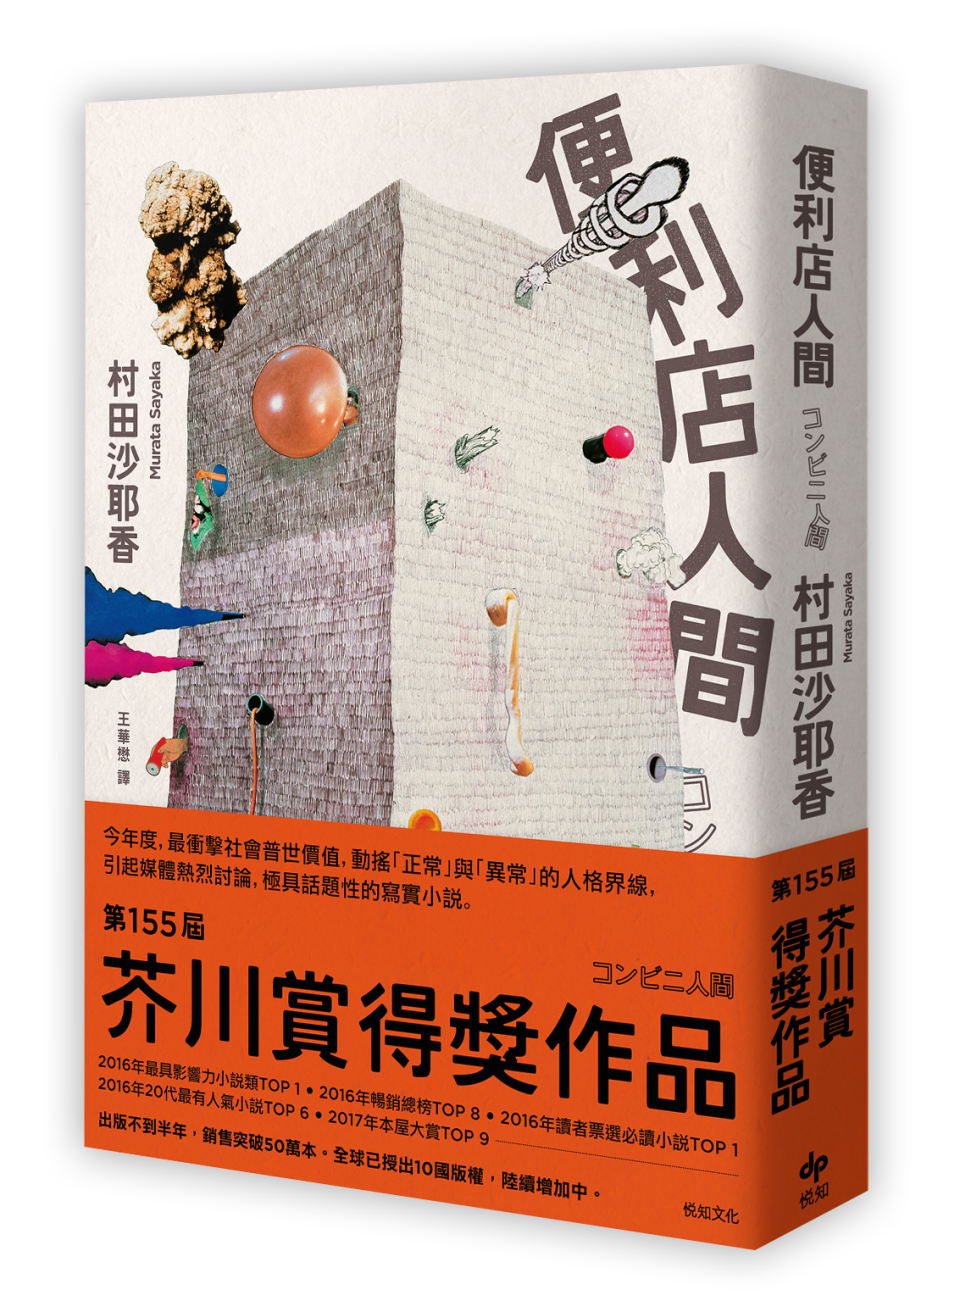 《便利店人間》，村田沙耶香著，悅知文化出版。